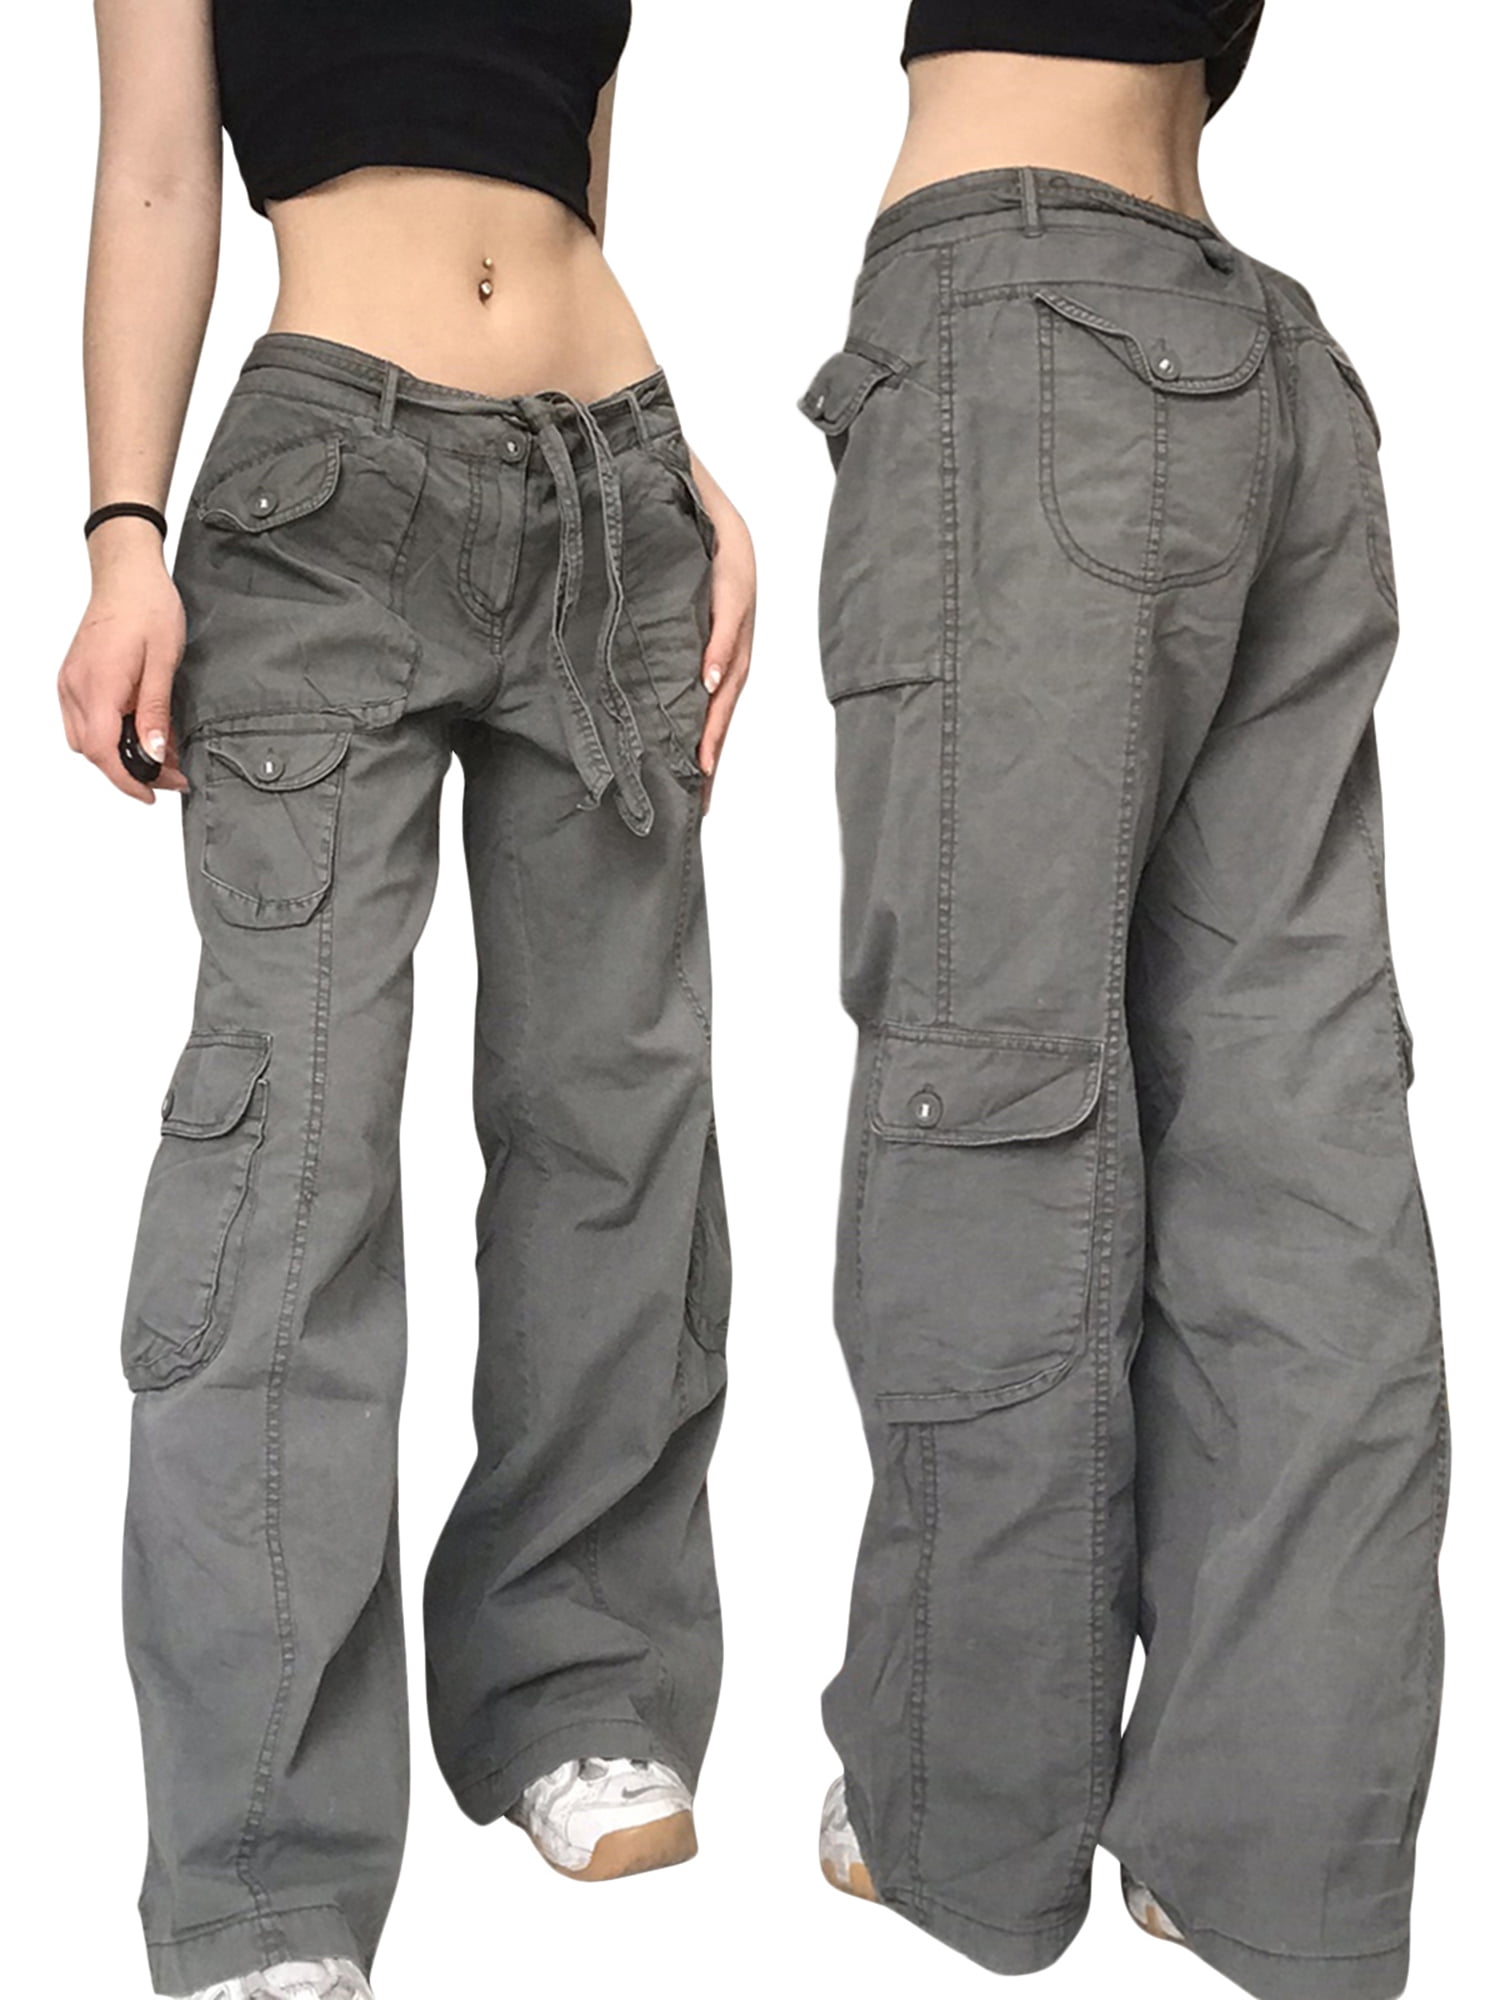 Y2K Grunge Cargo Pants for Women Low Boyfiend Baggy Jeans Vintage Hippie Trousers Streetwear - Walmart.com